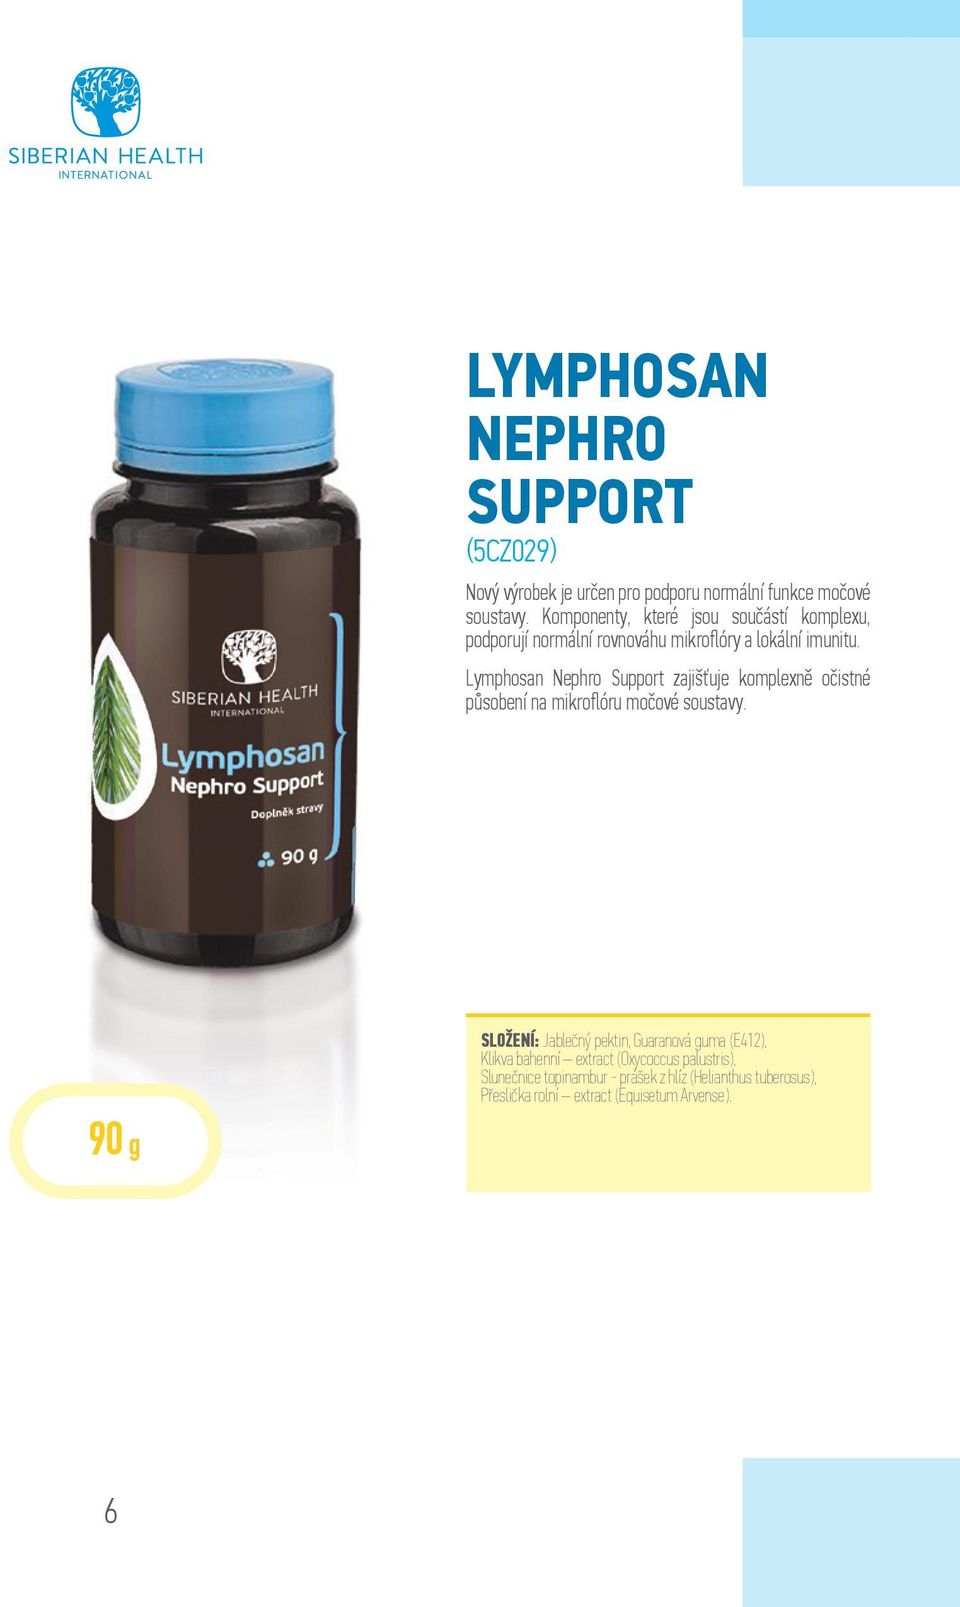 Lymphosan Nephro Support zajišťuje komplexně očistné působení na mikroflóru močové soustavy.